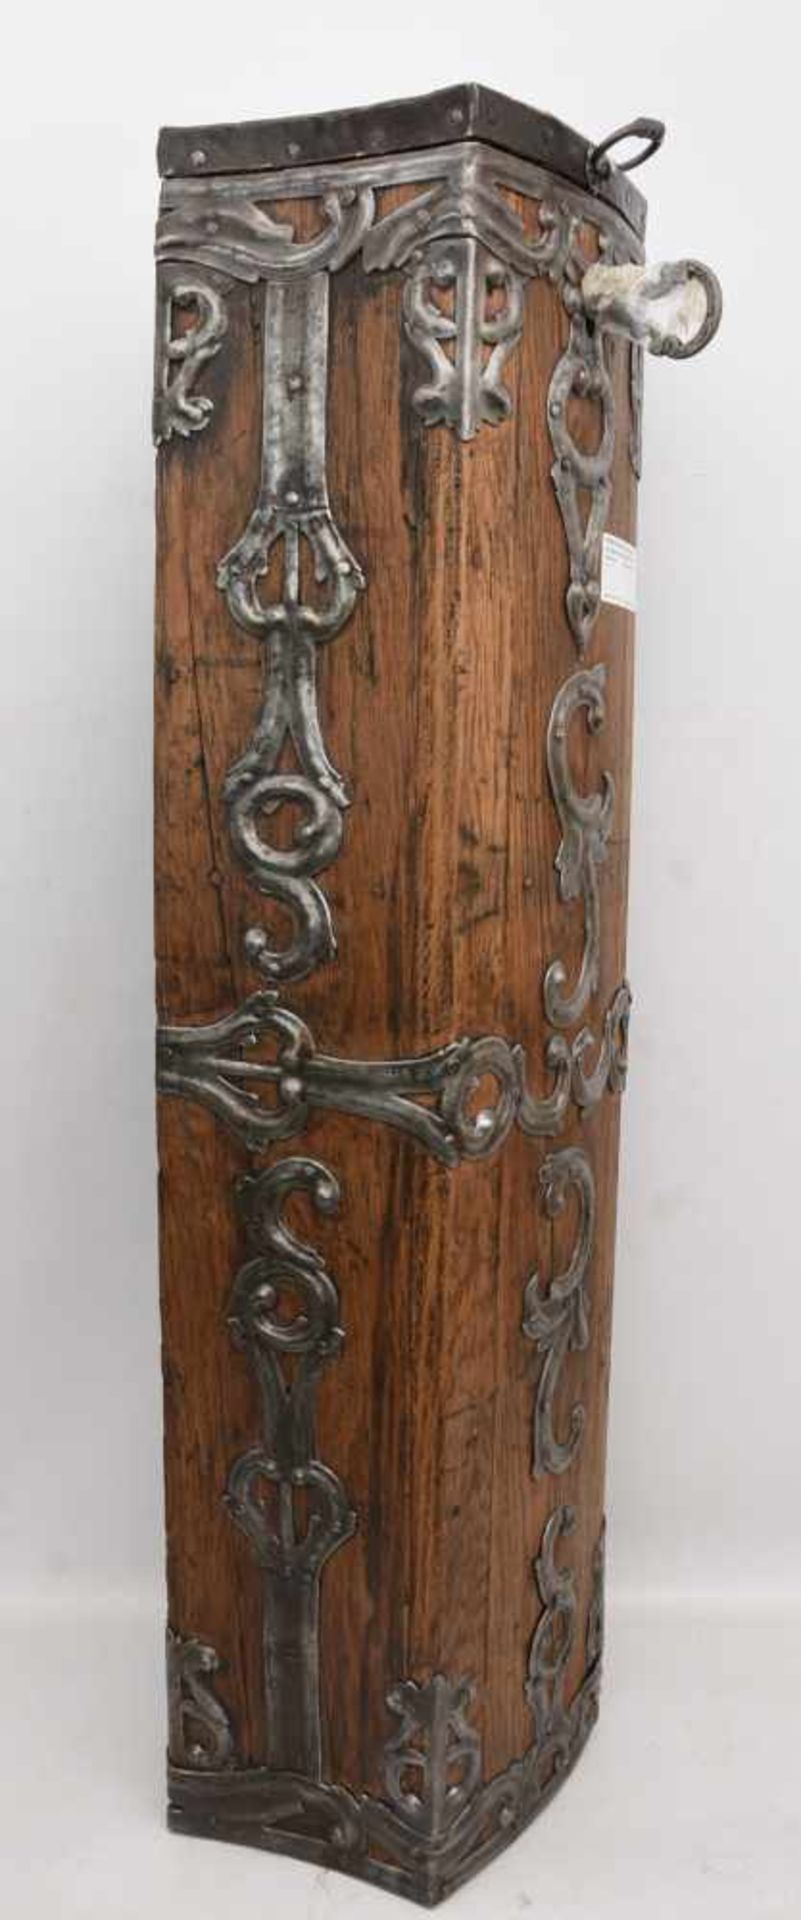 OPFERSTOCK AUS DEM 18. JH, Restauriert und in gutem Zustand, Schlüssel liegt bei. 106,5 x 30 cm. - Image 4 of 9